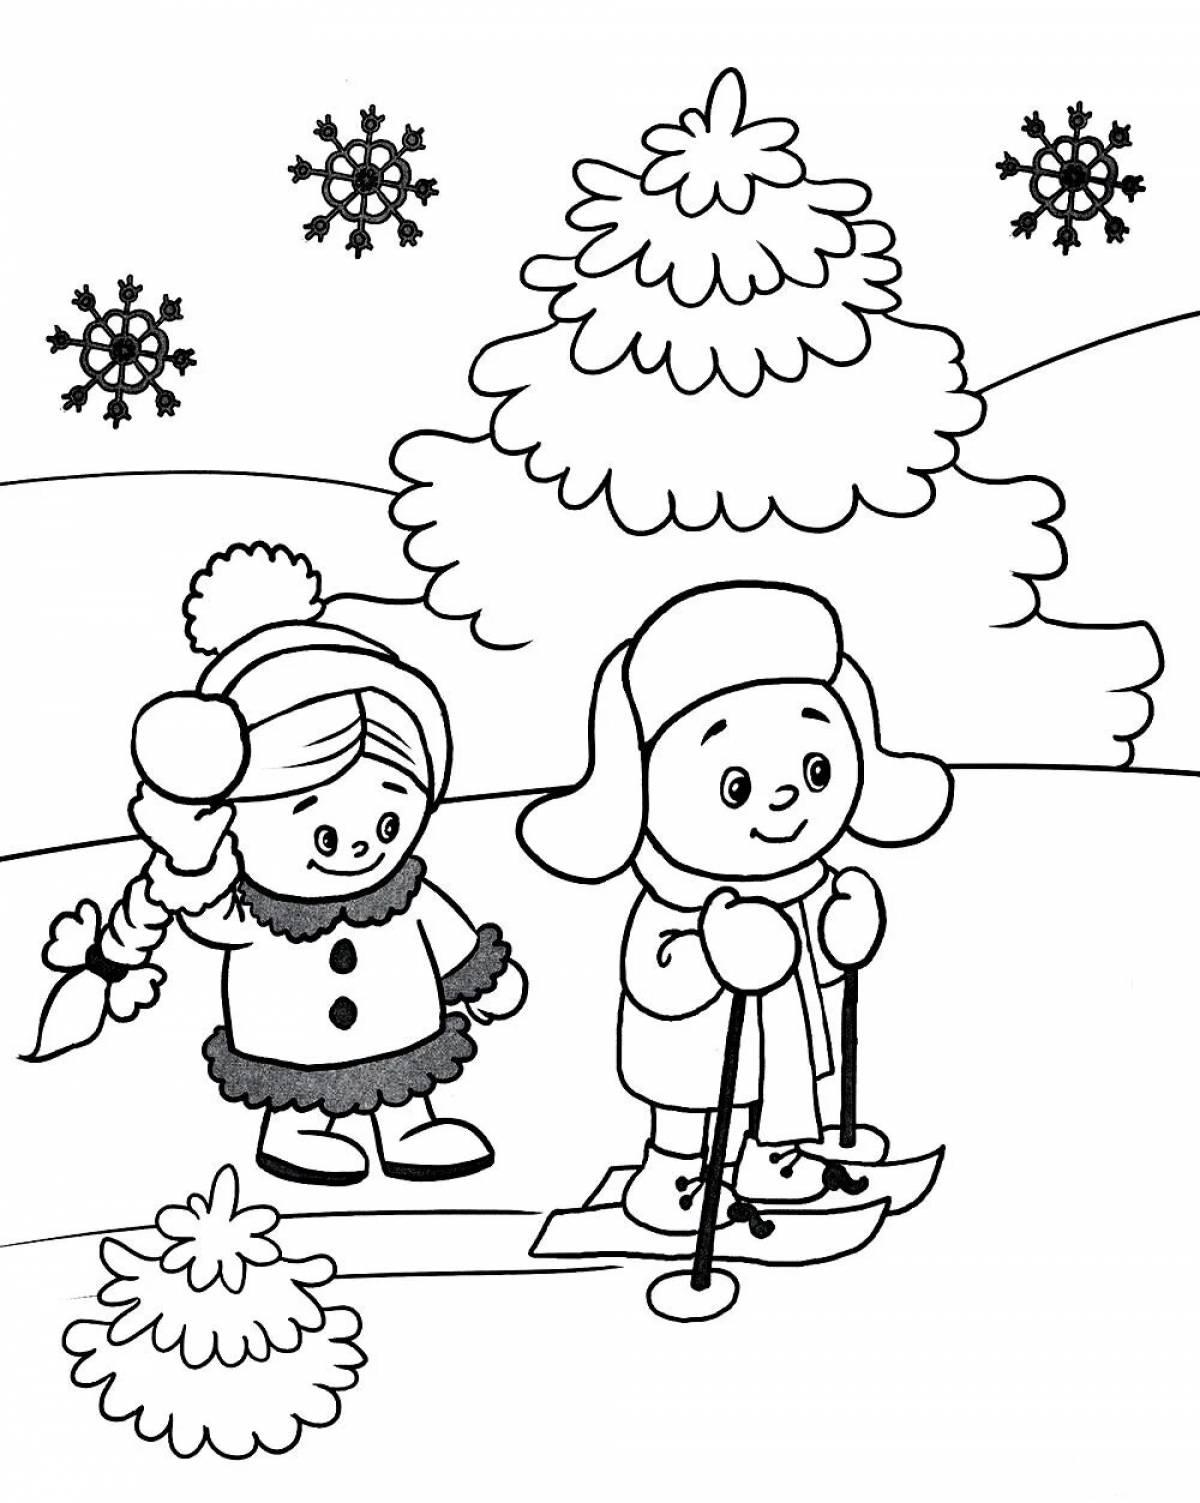 Раскраска. Раскраски для детей. зима. скачать бесплатно, дед мороз в санях,  подарки, елка, падает снег